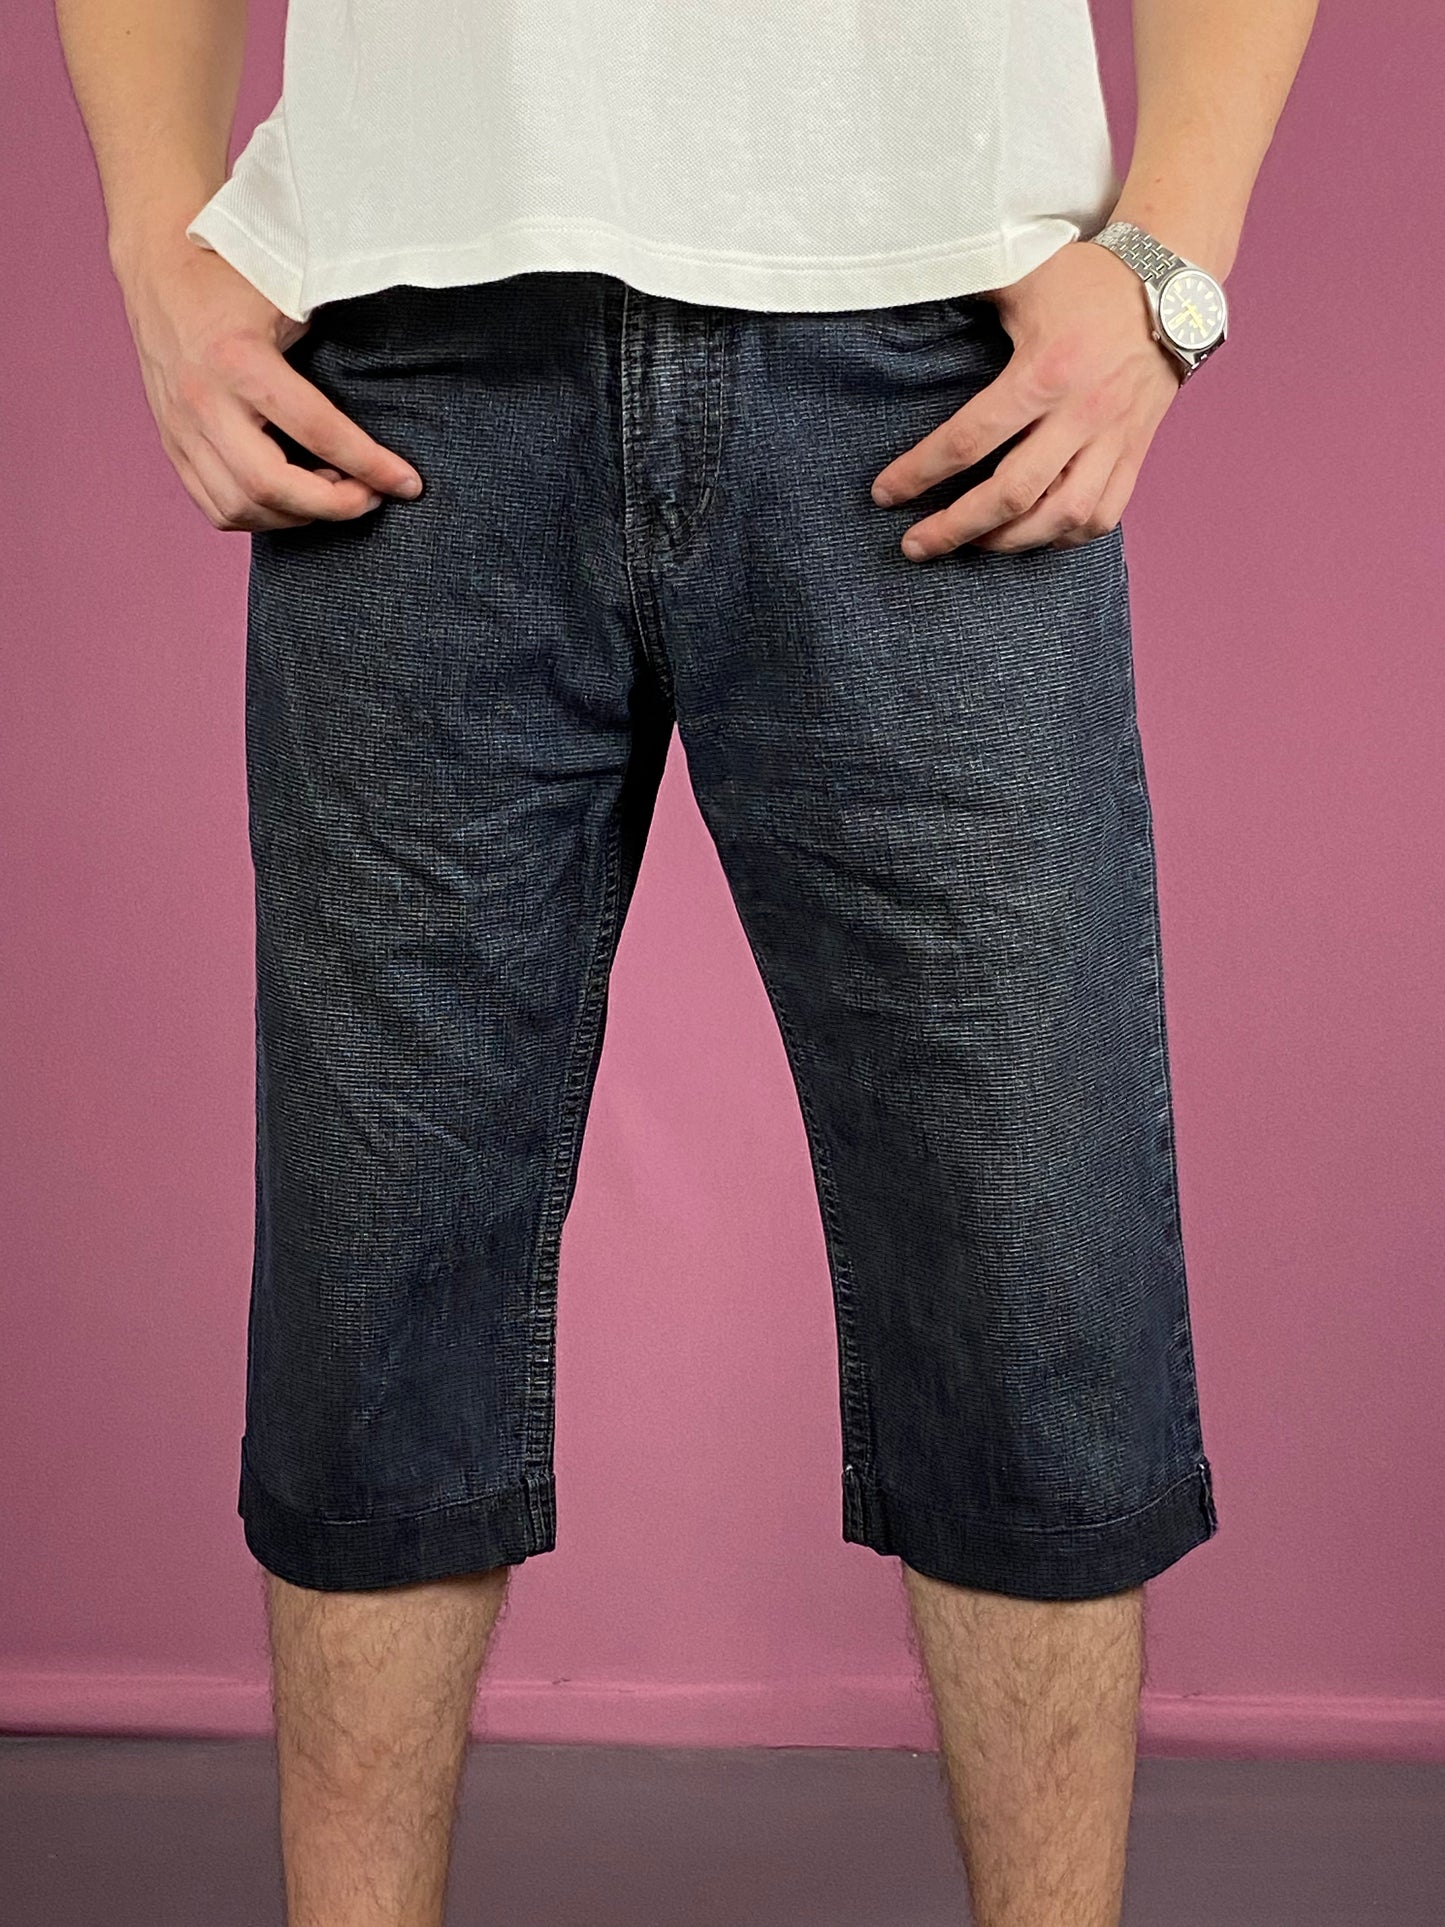 Versace Vintage Men's Long Jeans Shorts - 32 Navy Blue Cotton